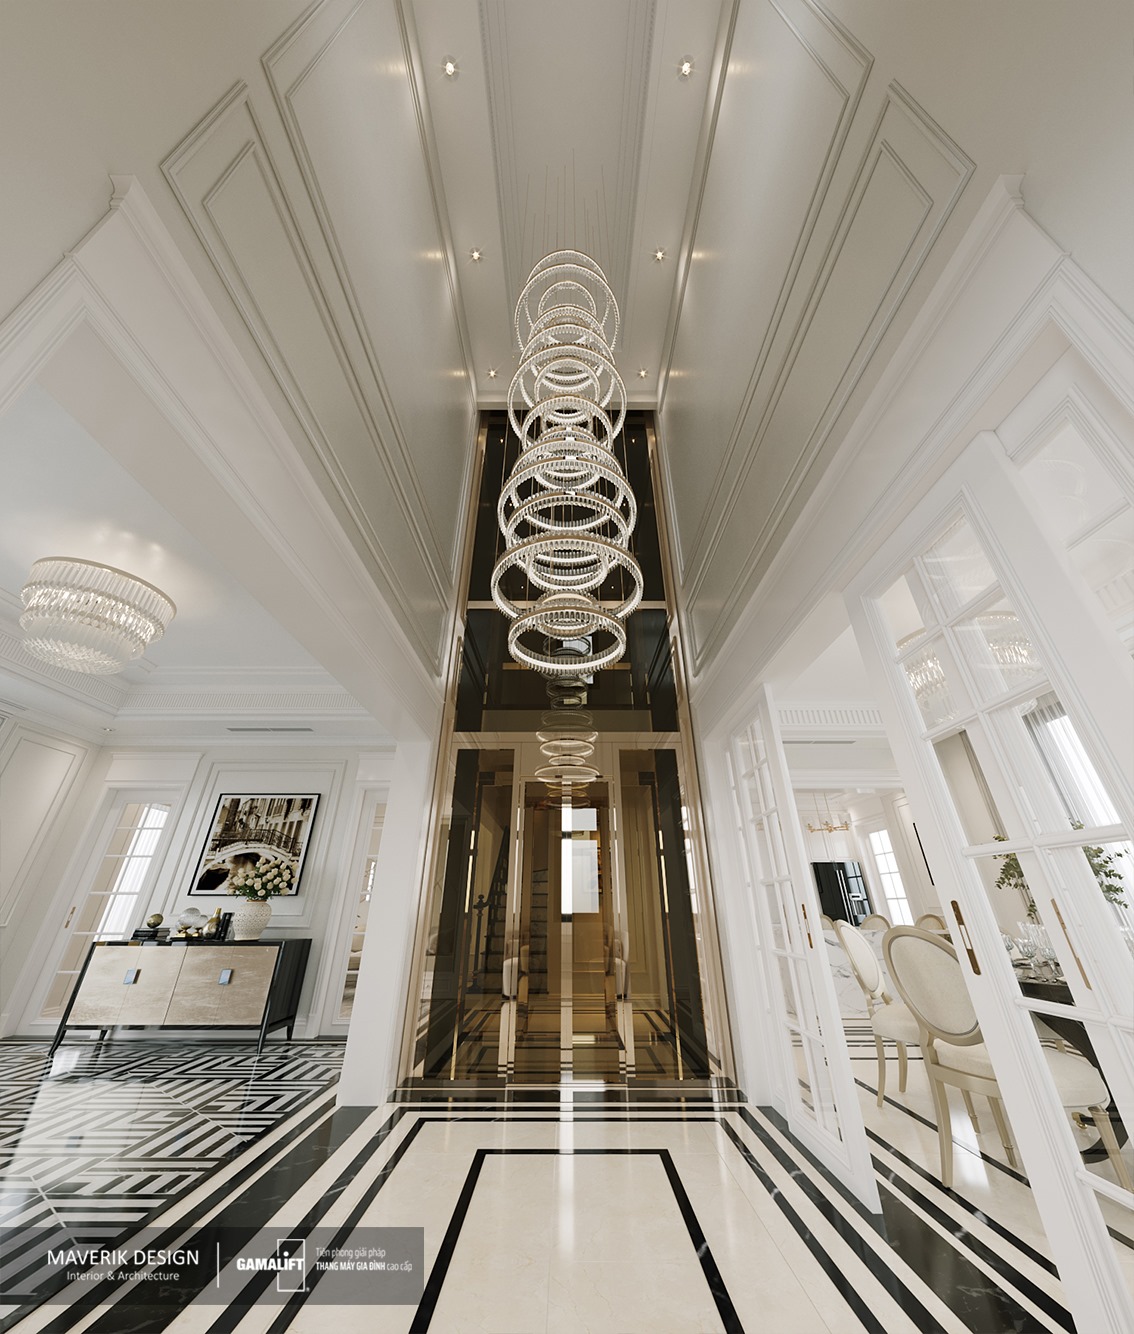 Thiết kế thang máy tại chính giữa ngôi nhà tạo điểm nhấn cho tổng quan kiến trúc